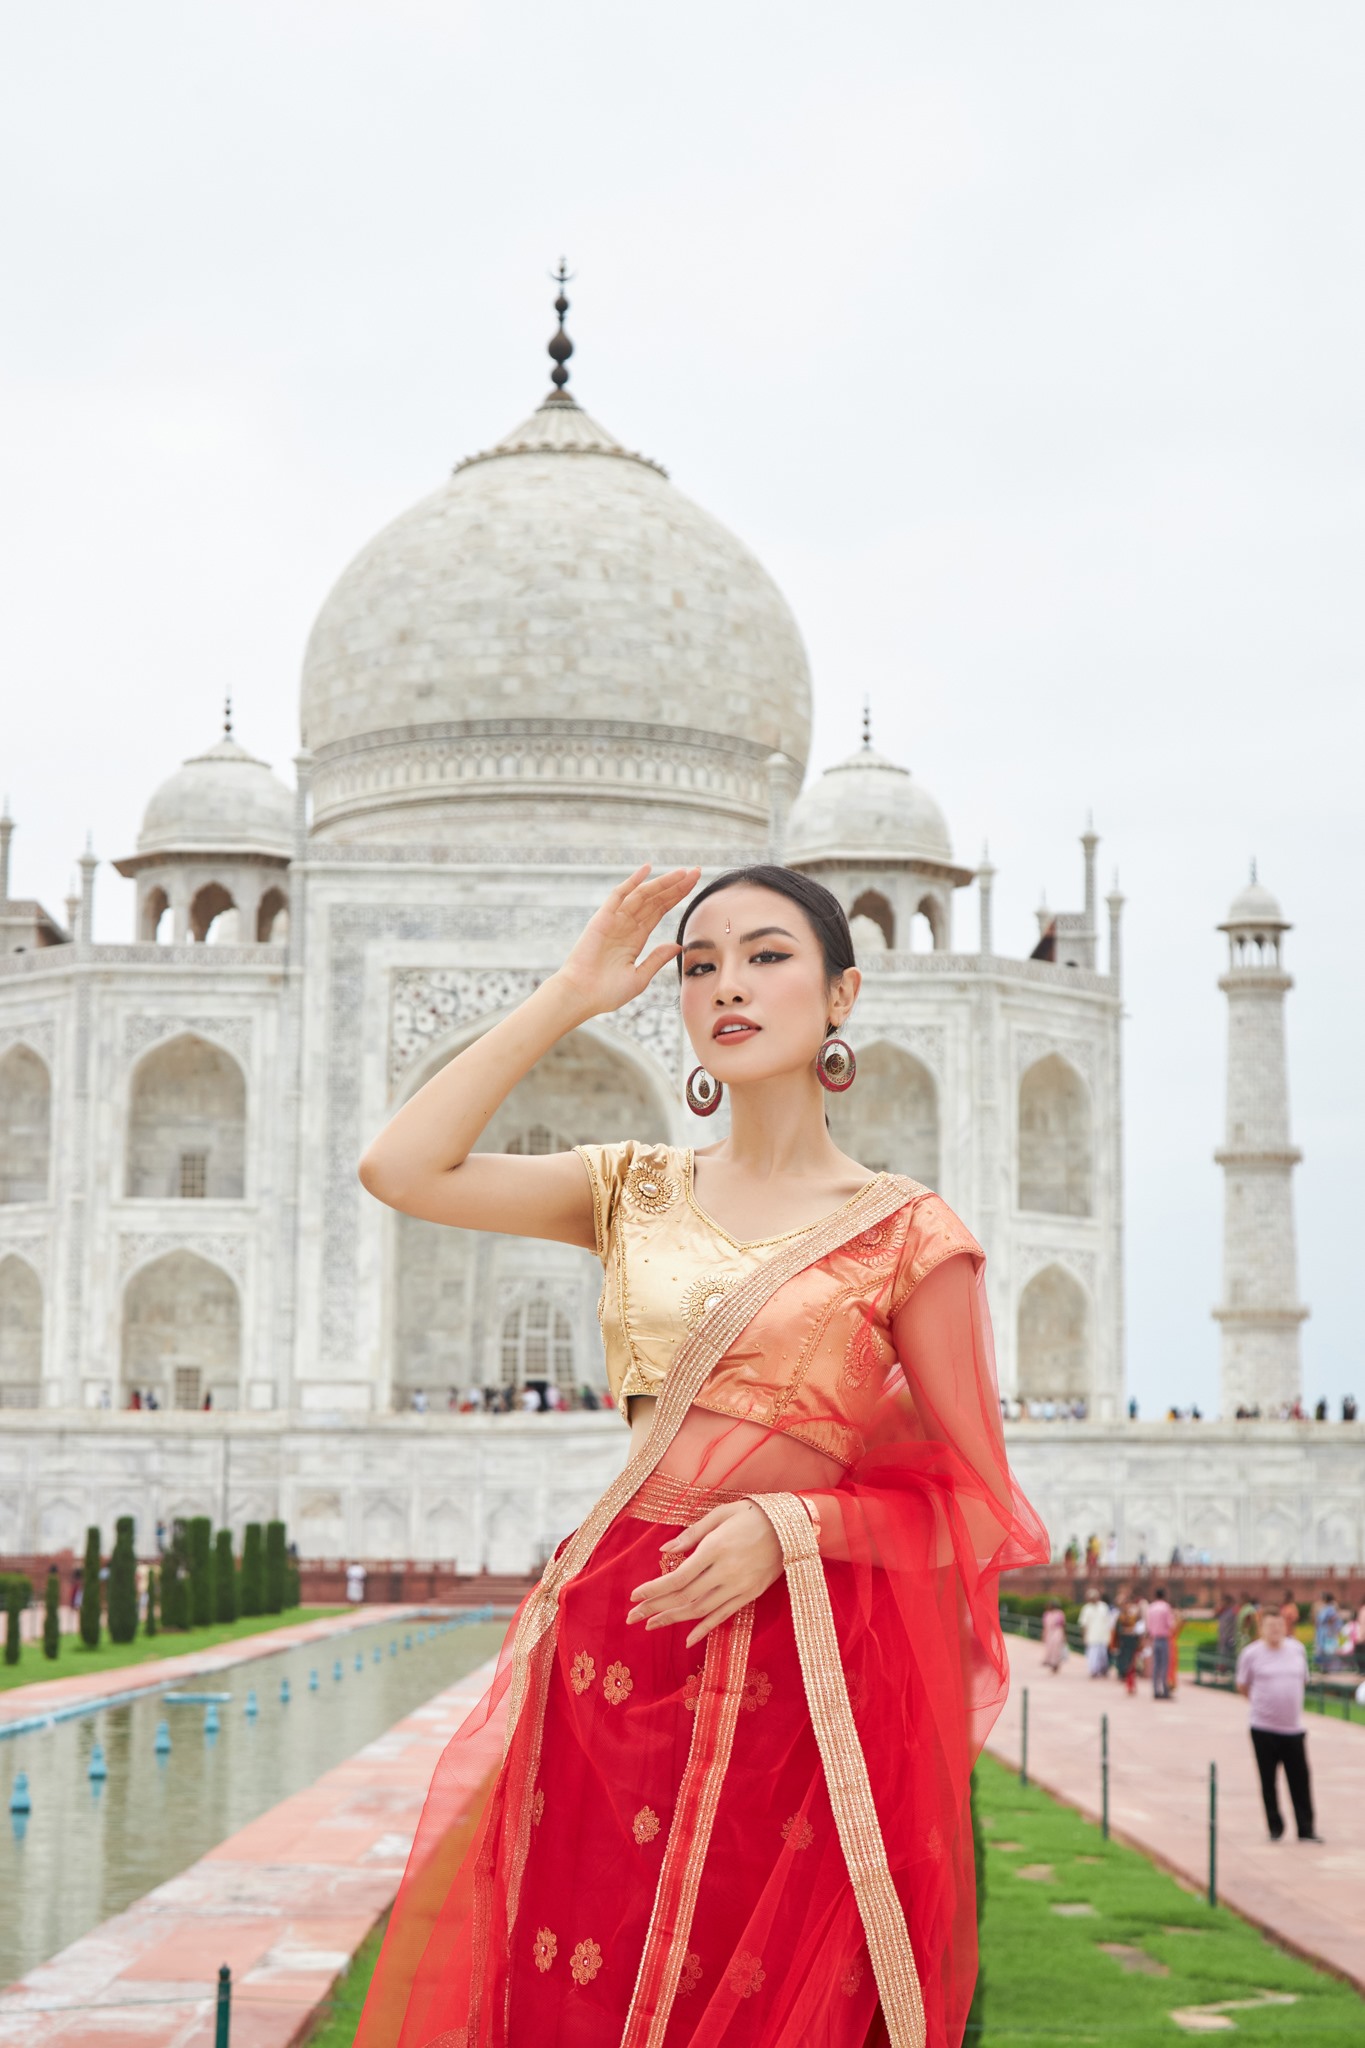 Với tone màu đỏ và vàng đồng của bộ trang phục, nàng hậu Thủy Tiên nổi bật giữa không gian kiến trúc của Taj Mahal và Red Fort